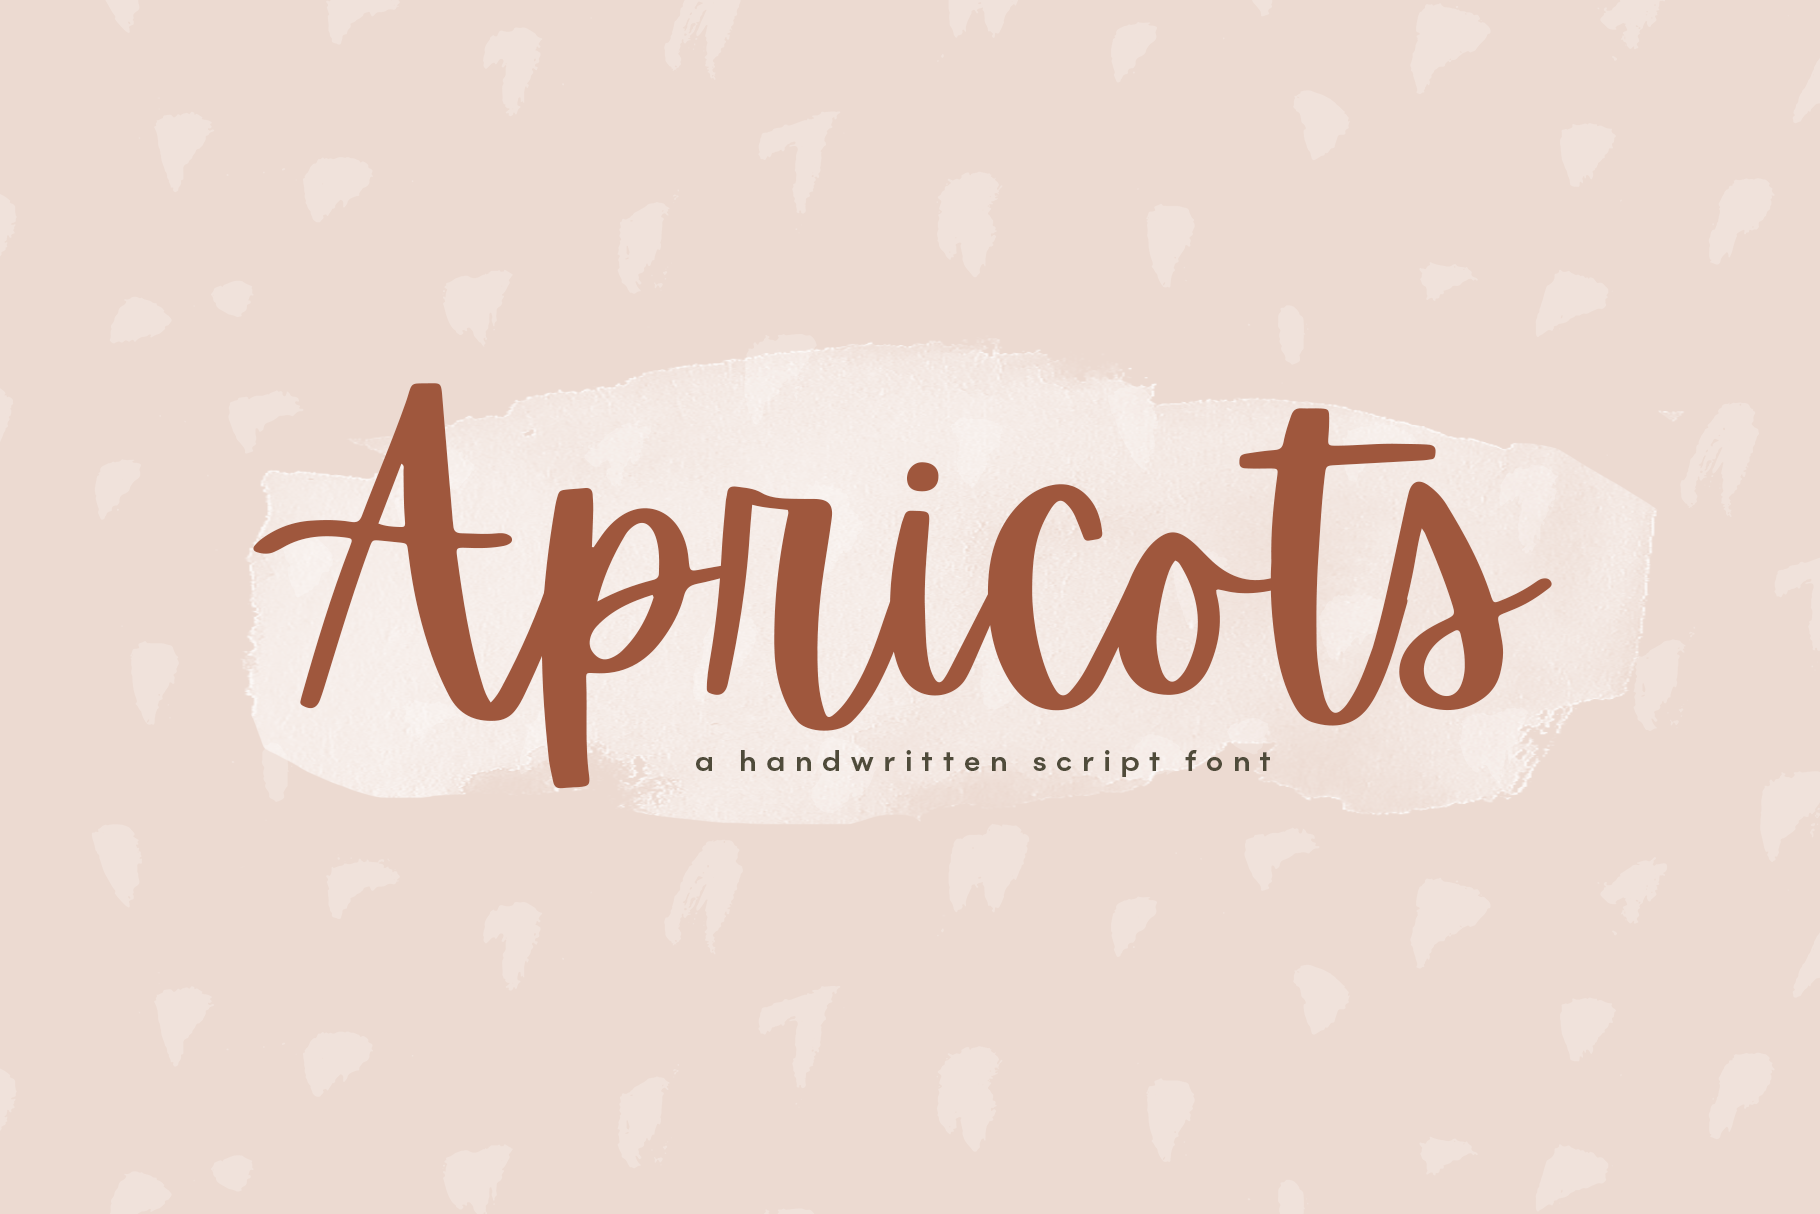 Apricots A Handwritten Script Font By Ka Designs Thehungryjpeg Com